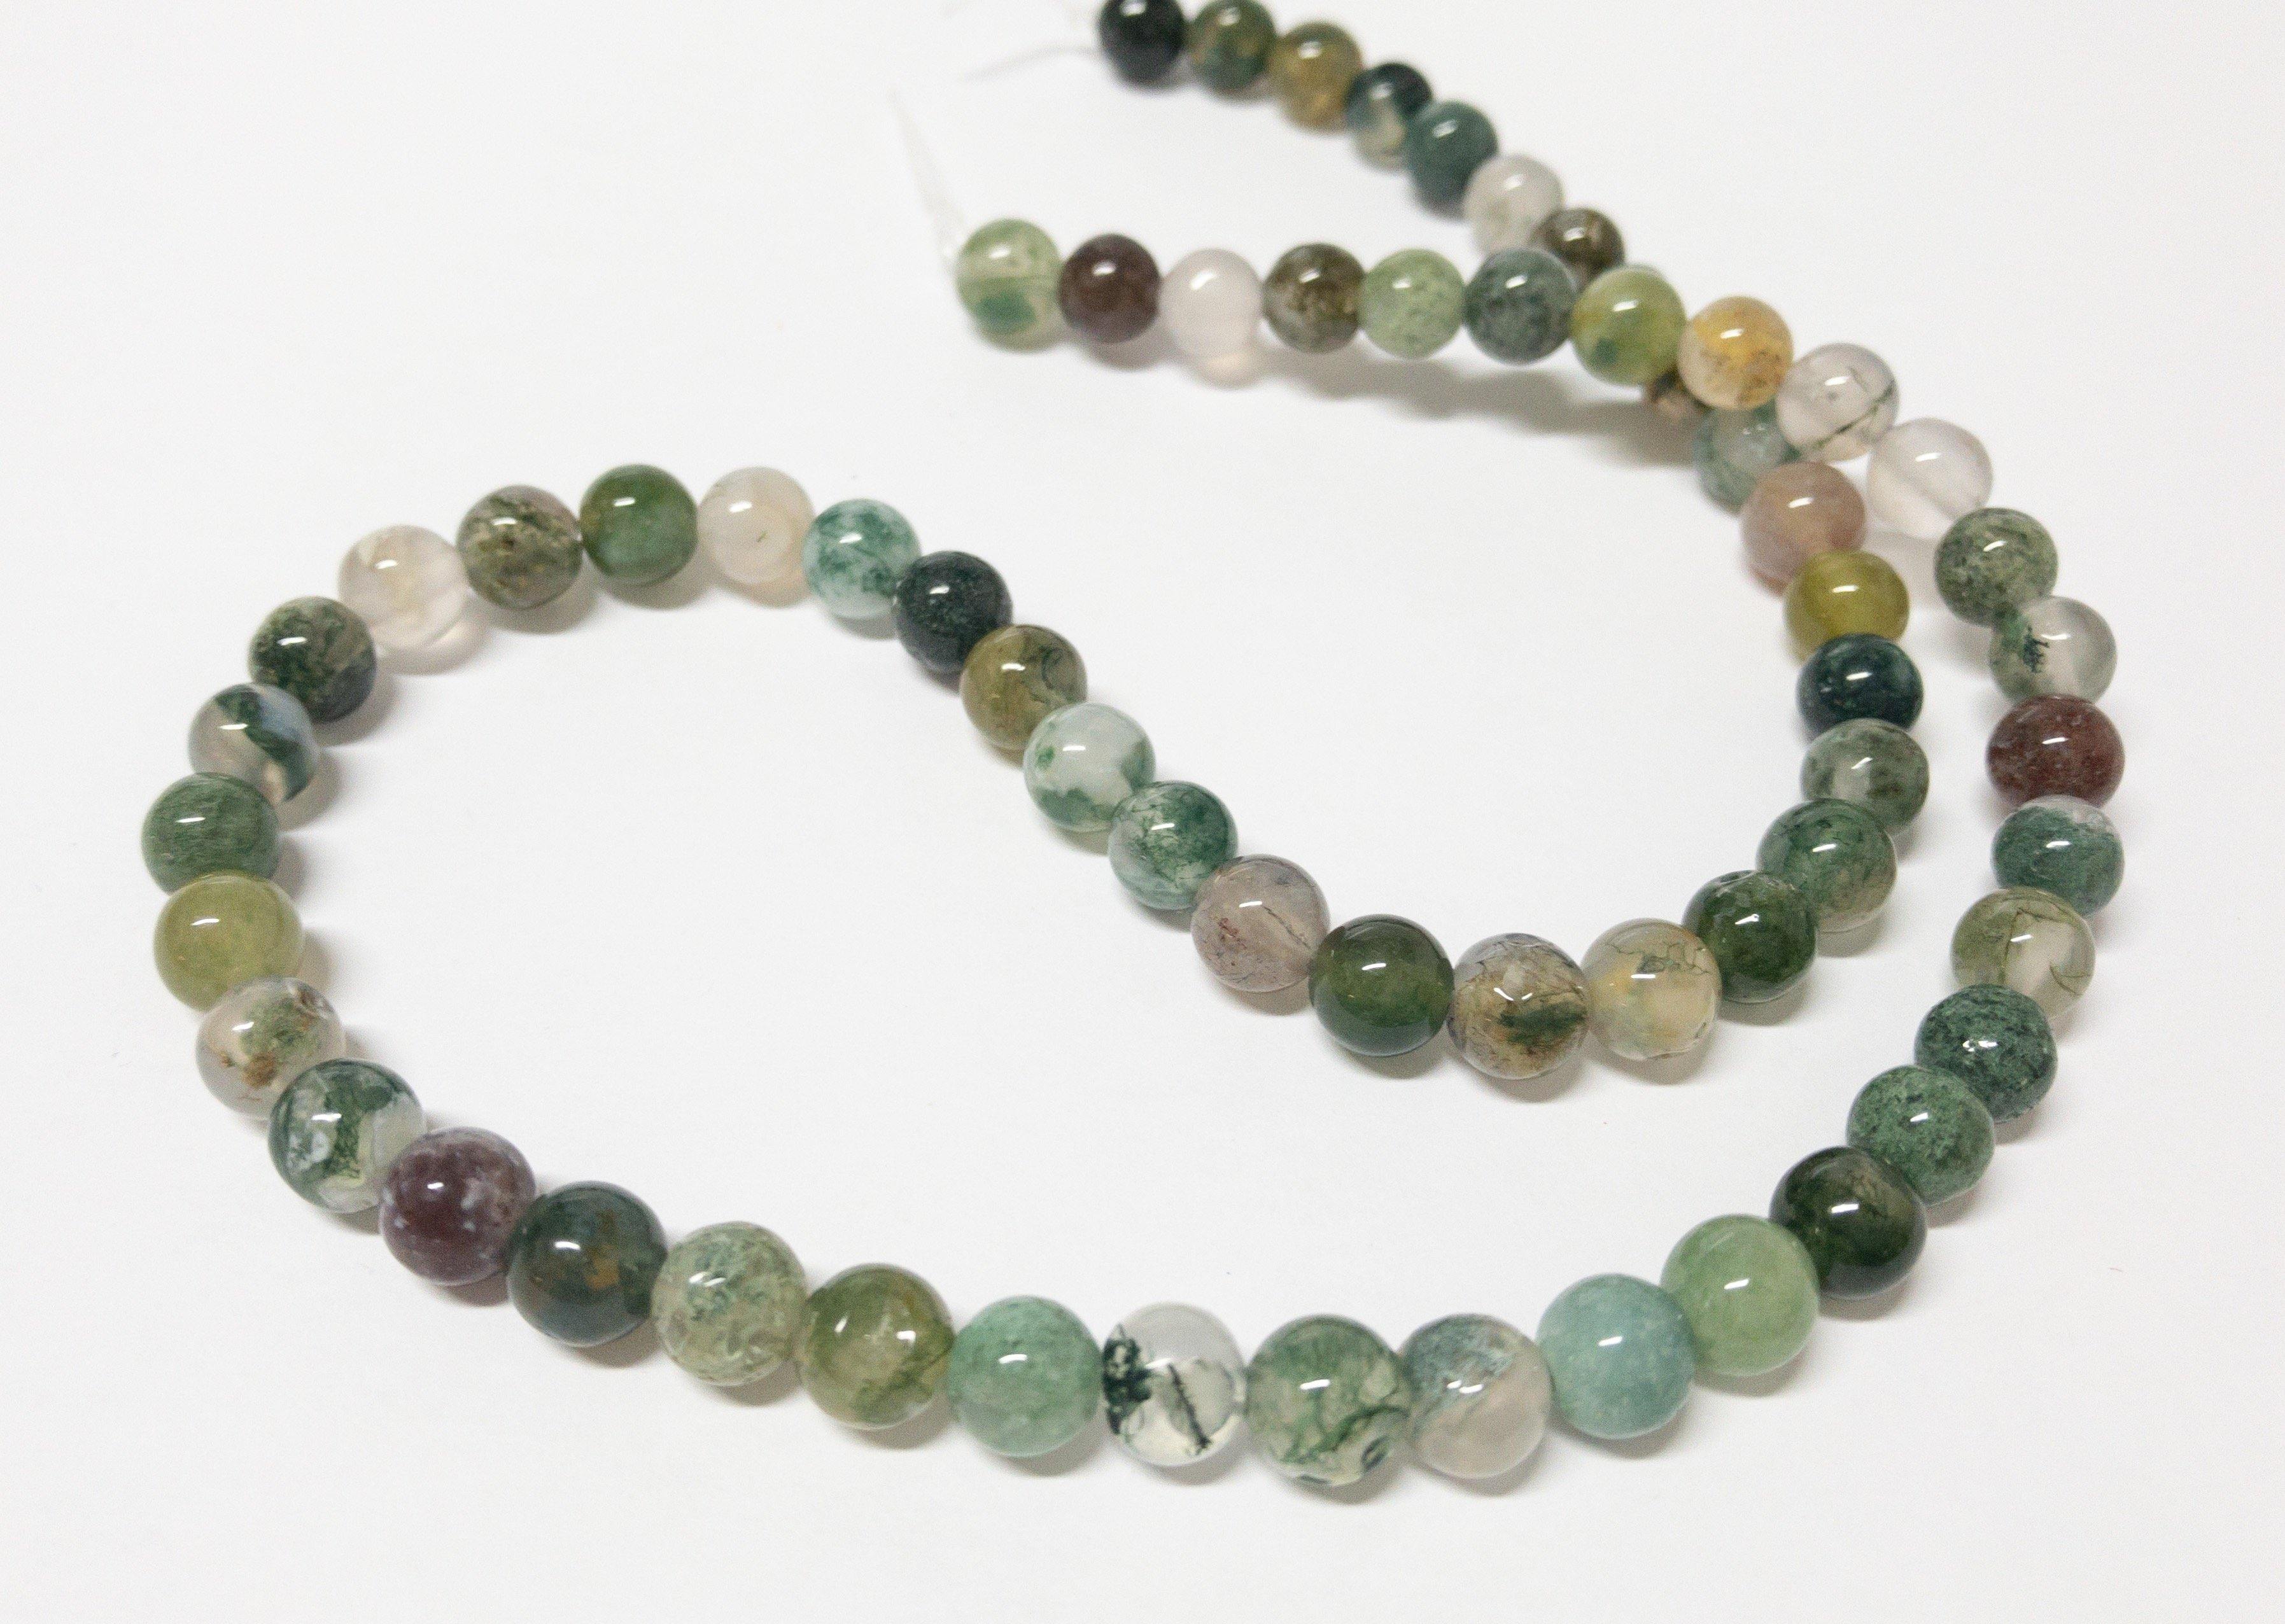 Naturstein Perlen Chalcedon (Quarz) und Jaspis 6 mm - Farbe green multicolor - bead&more